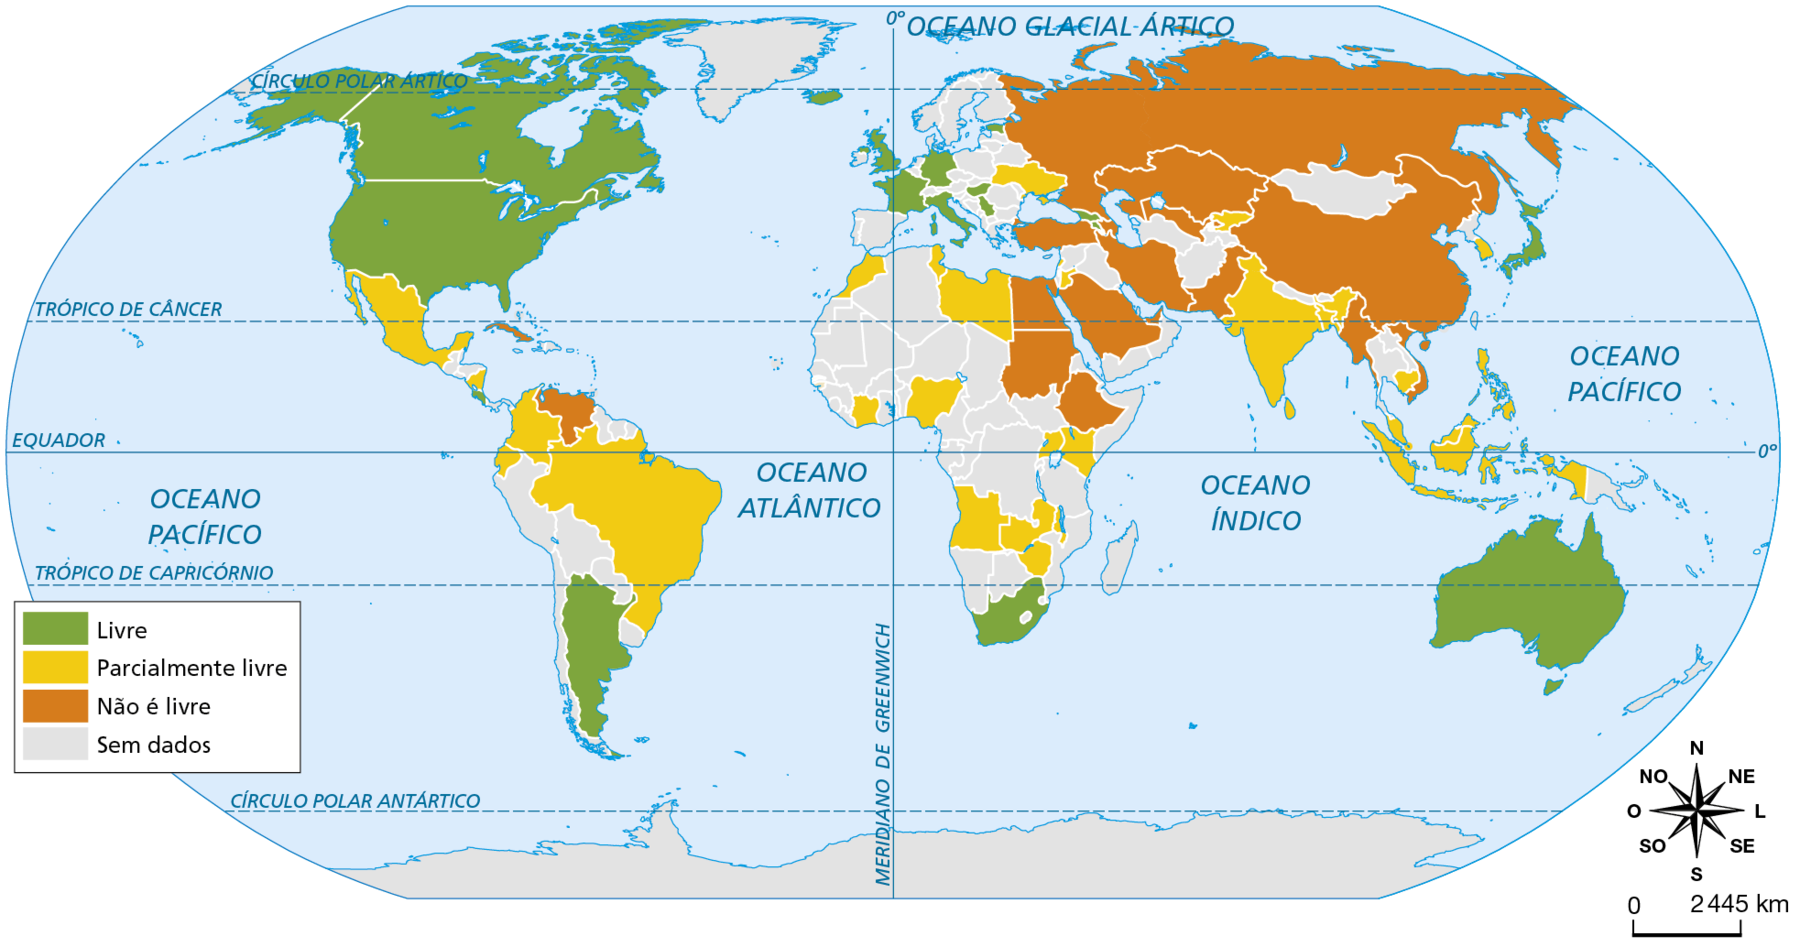 Mapa. Planisfério: liberdade no uso da internet, 2021. Mapa mostrando liberdade no uso da internet, por país. Uso livre da internet: Canadá, Estados Unidos, Argentina, África do Sul, França, Reino Unido, Estônia, Alemanha, Sérvia, Hungria, Itália, Islândia, Austrália, Geórgia, Armênia, Japão. Uso parcialmente livre da internet: México, Brasil, Colômbia, Equador, Nicarágua, Angola, Zâmbia, Zimbábue, Malaui, Nigéria, Malásia, Quênia, Uganda, Costa do Marfim, Marrocos, Tunísia, Líbia, Ucrânia, Israel, Jordânia, Índia, Quirguistão, Bangladesh, Indonésia e Filipinas. Uso da internet não é livre: Venezuela, Egito, Sudão, Etiópia, Rússia, Cazaquistão, China, Emirados Árabes, Arábia Saudita, Turquia, Irã, Paquistão, Mianmar, Vietnã, Cuba, Uzbequistão, Azerbaijão. Os demais países não apresentam dados. Na parte inferior direita, rosa dos ventos e escala de 0 a 2.445 quilômetros.